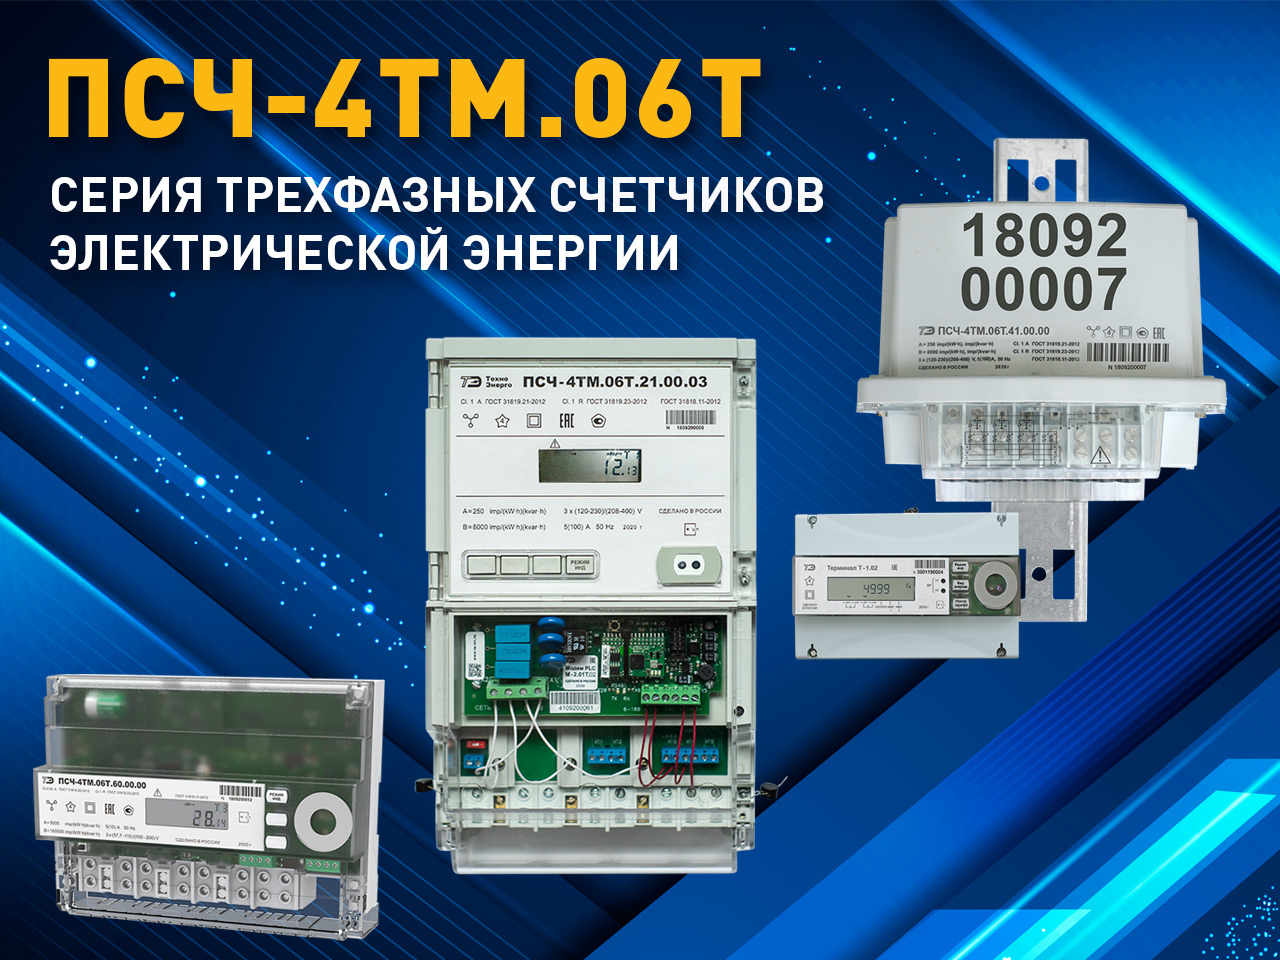 Новая серия трехфазных счетчиков электроэнергии ПСЧ-4ТМ.06Т